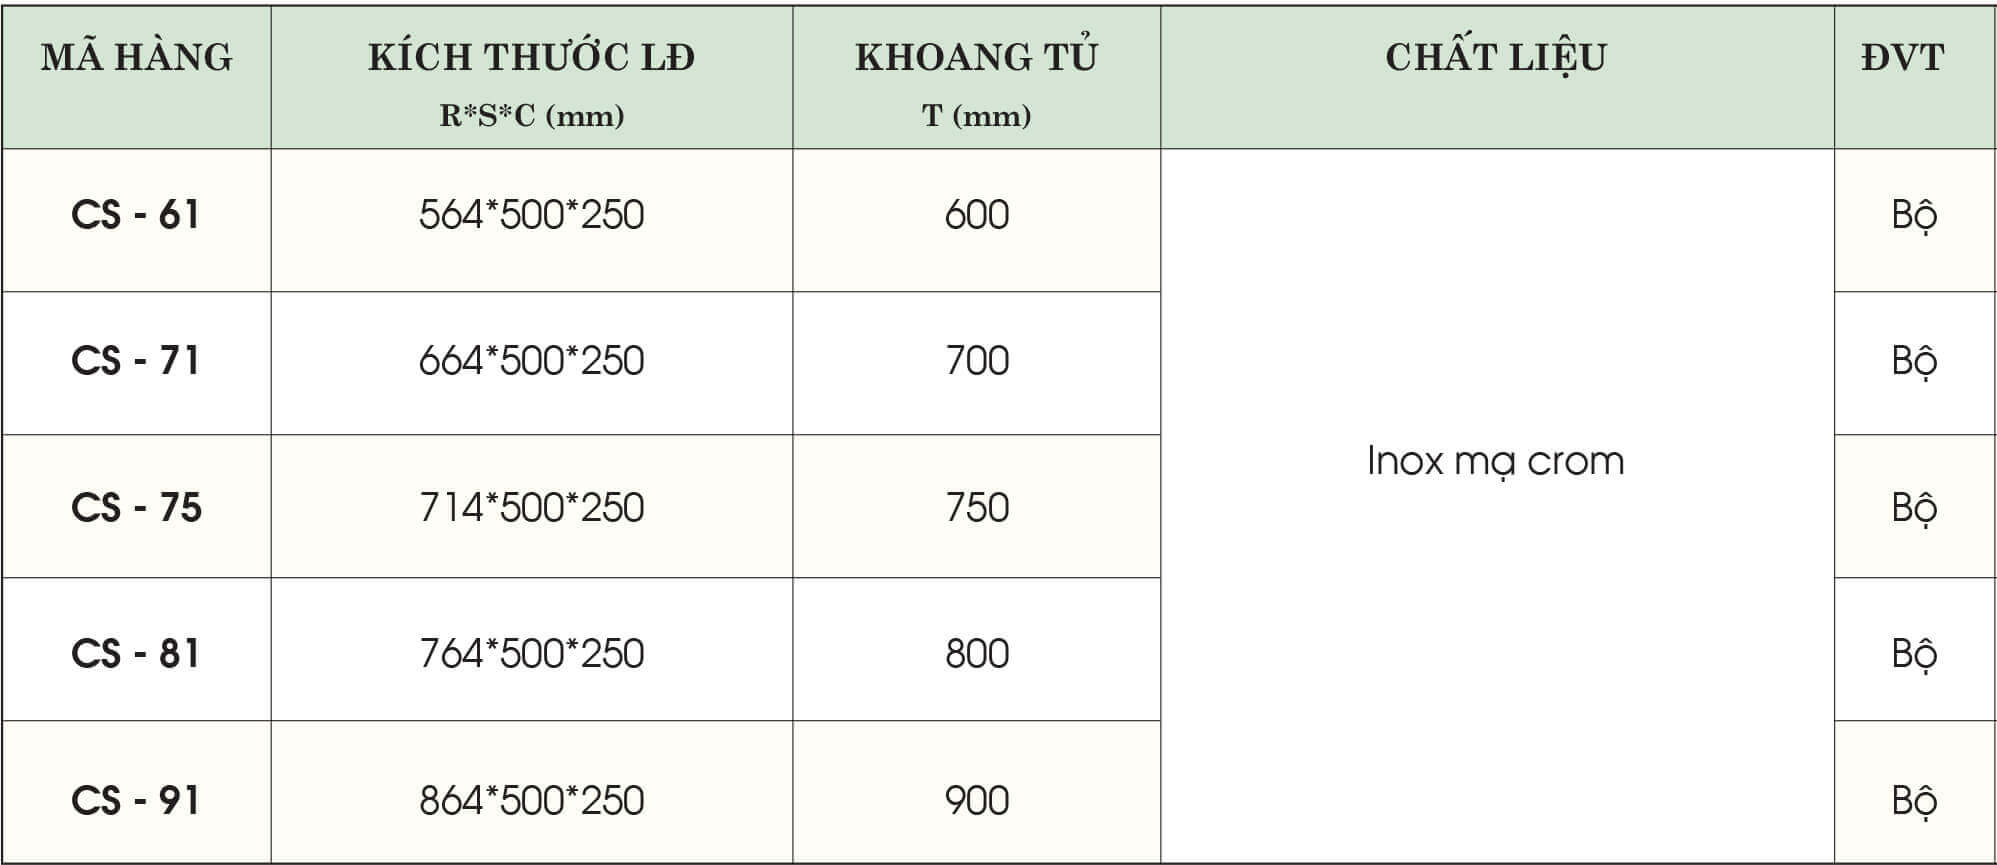 Kệ đựng bát đĩa đa năng inox mạ crom Grob CR-61/CR-71/CR-75/CR-81/CR-91 4